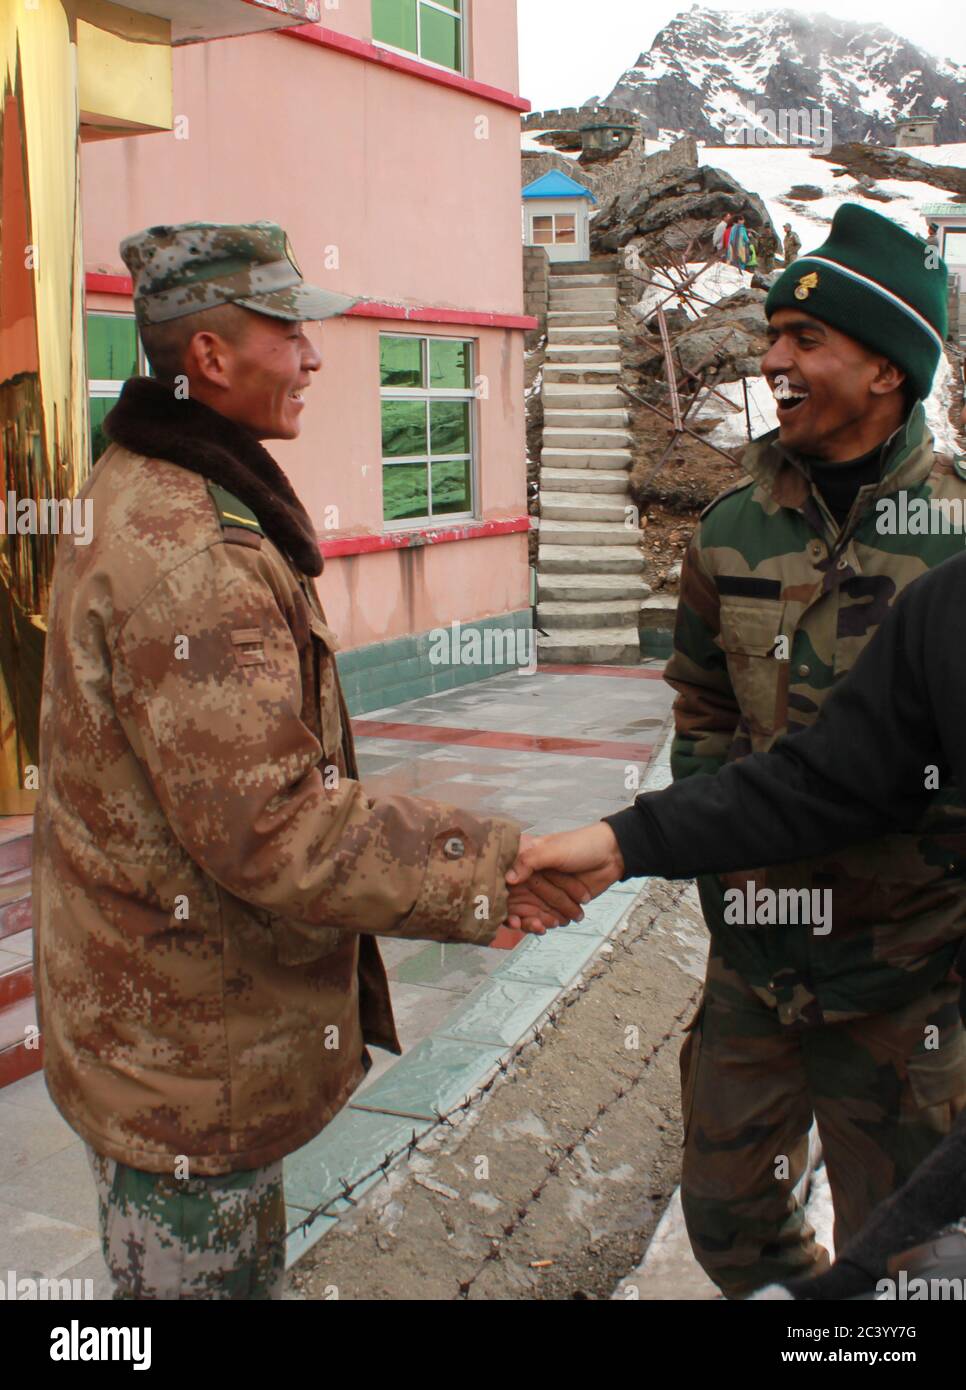 Soldado chino del PLA se sacude las manos con un turista mientras comparte una risa con una tropa India en el Paso fronterizo de Nathula India-China en Sikkim, India Foto de stock